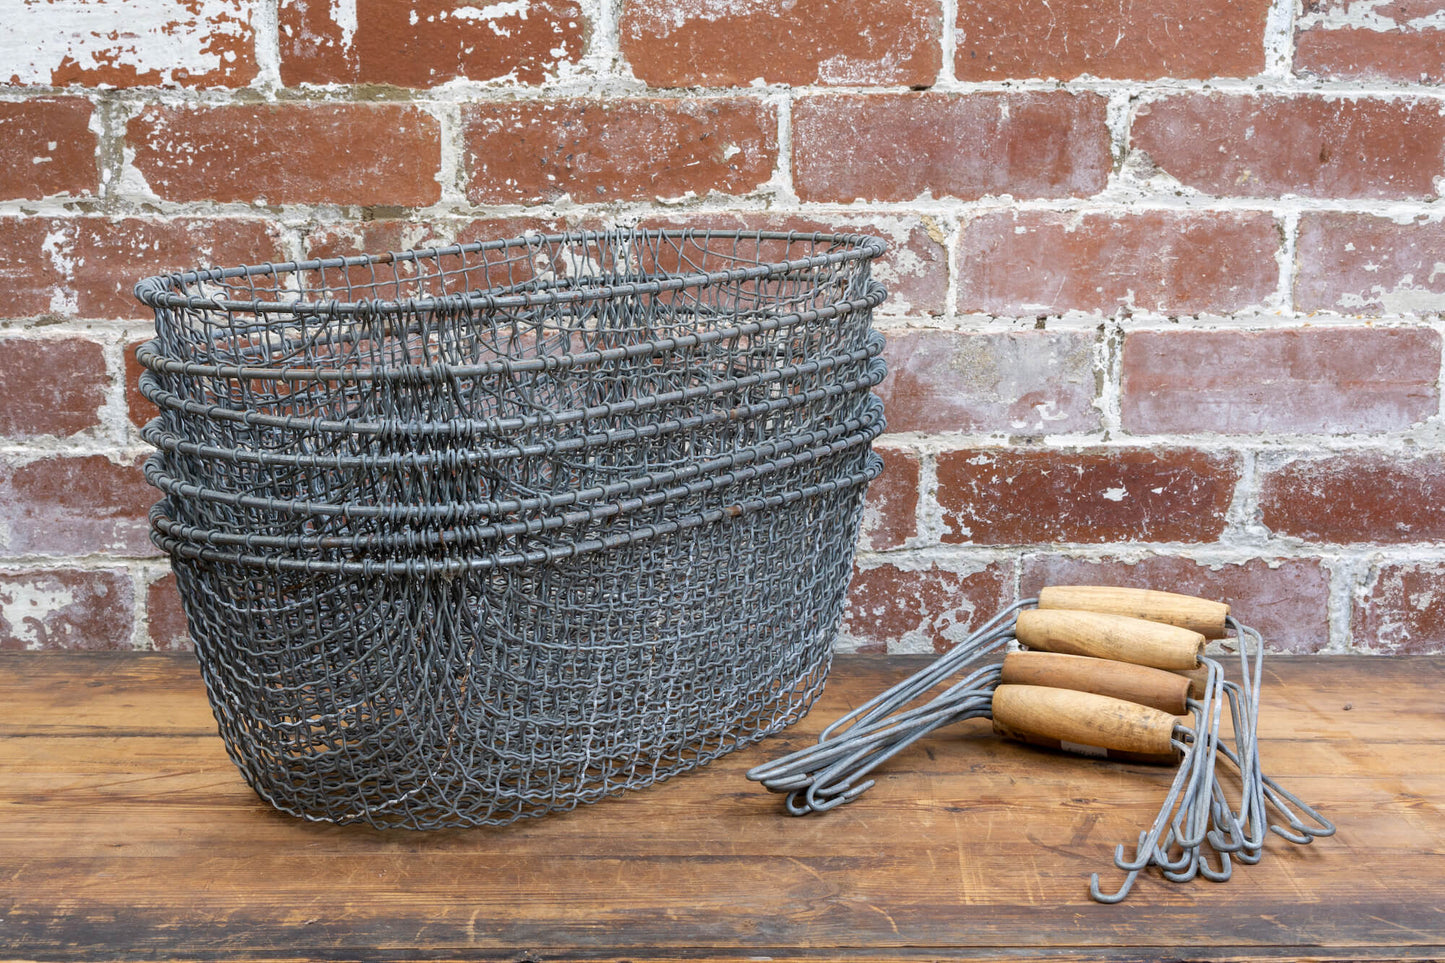 Wire Mesh Baskets